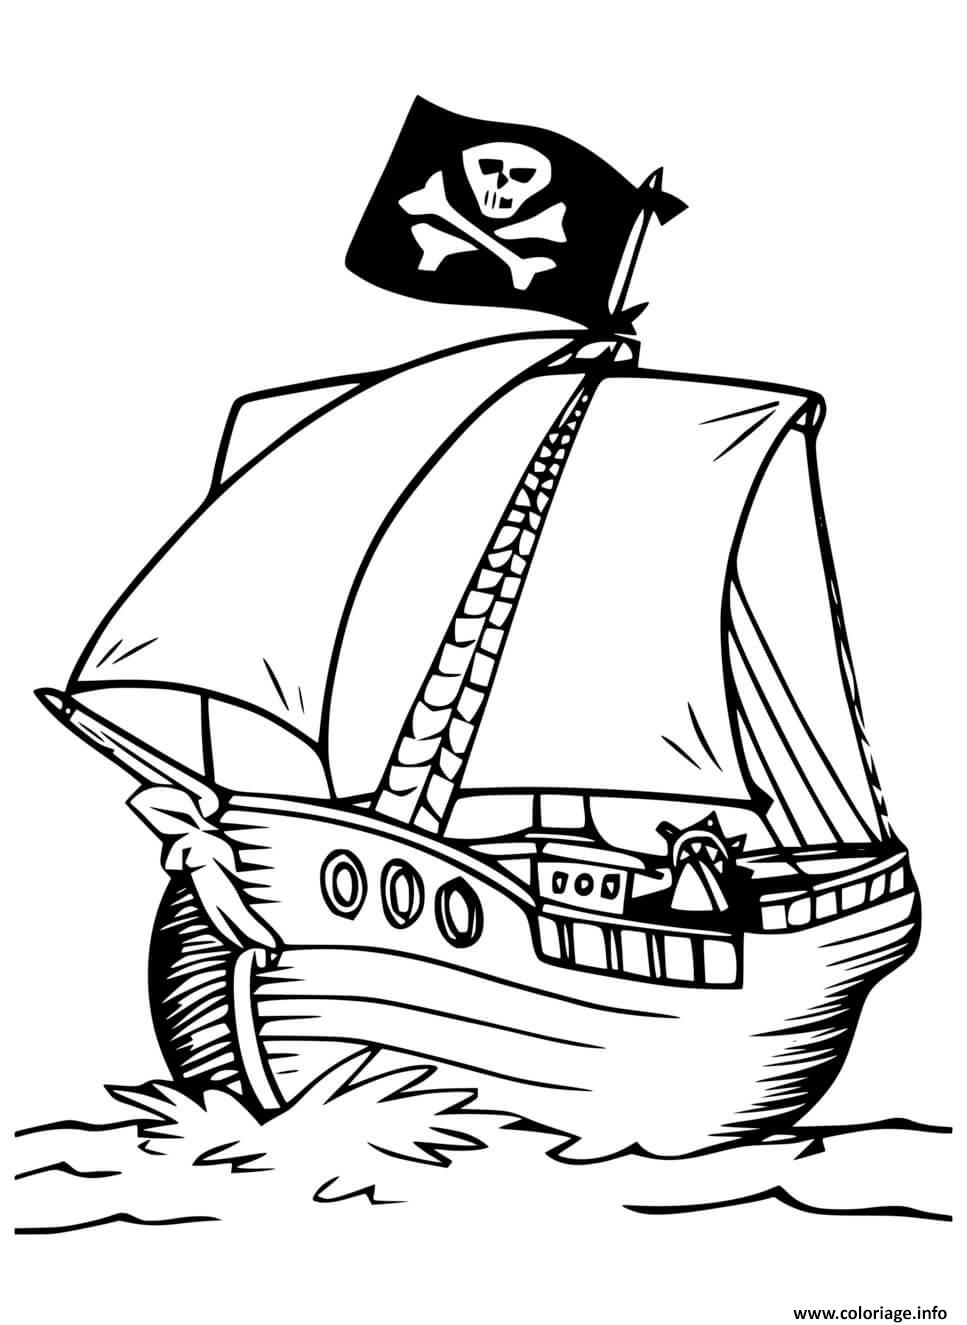 Coloriage pirate bateau simple  JeColorie.com